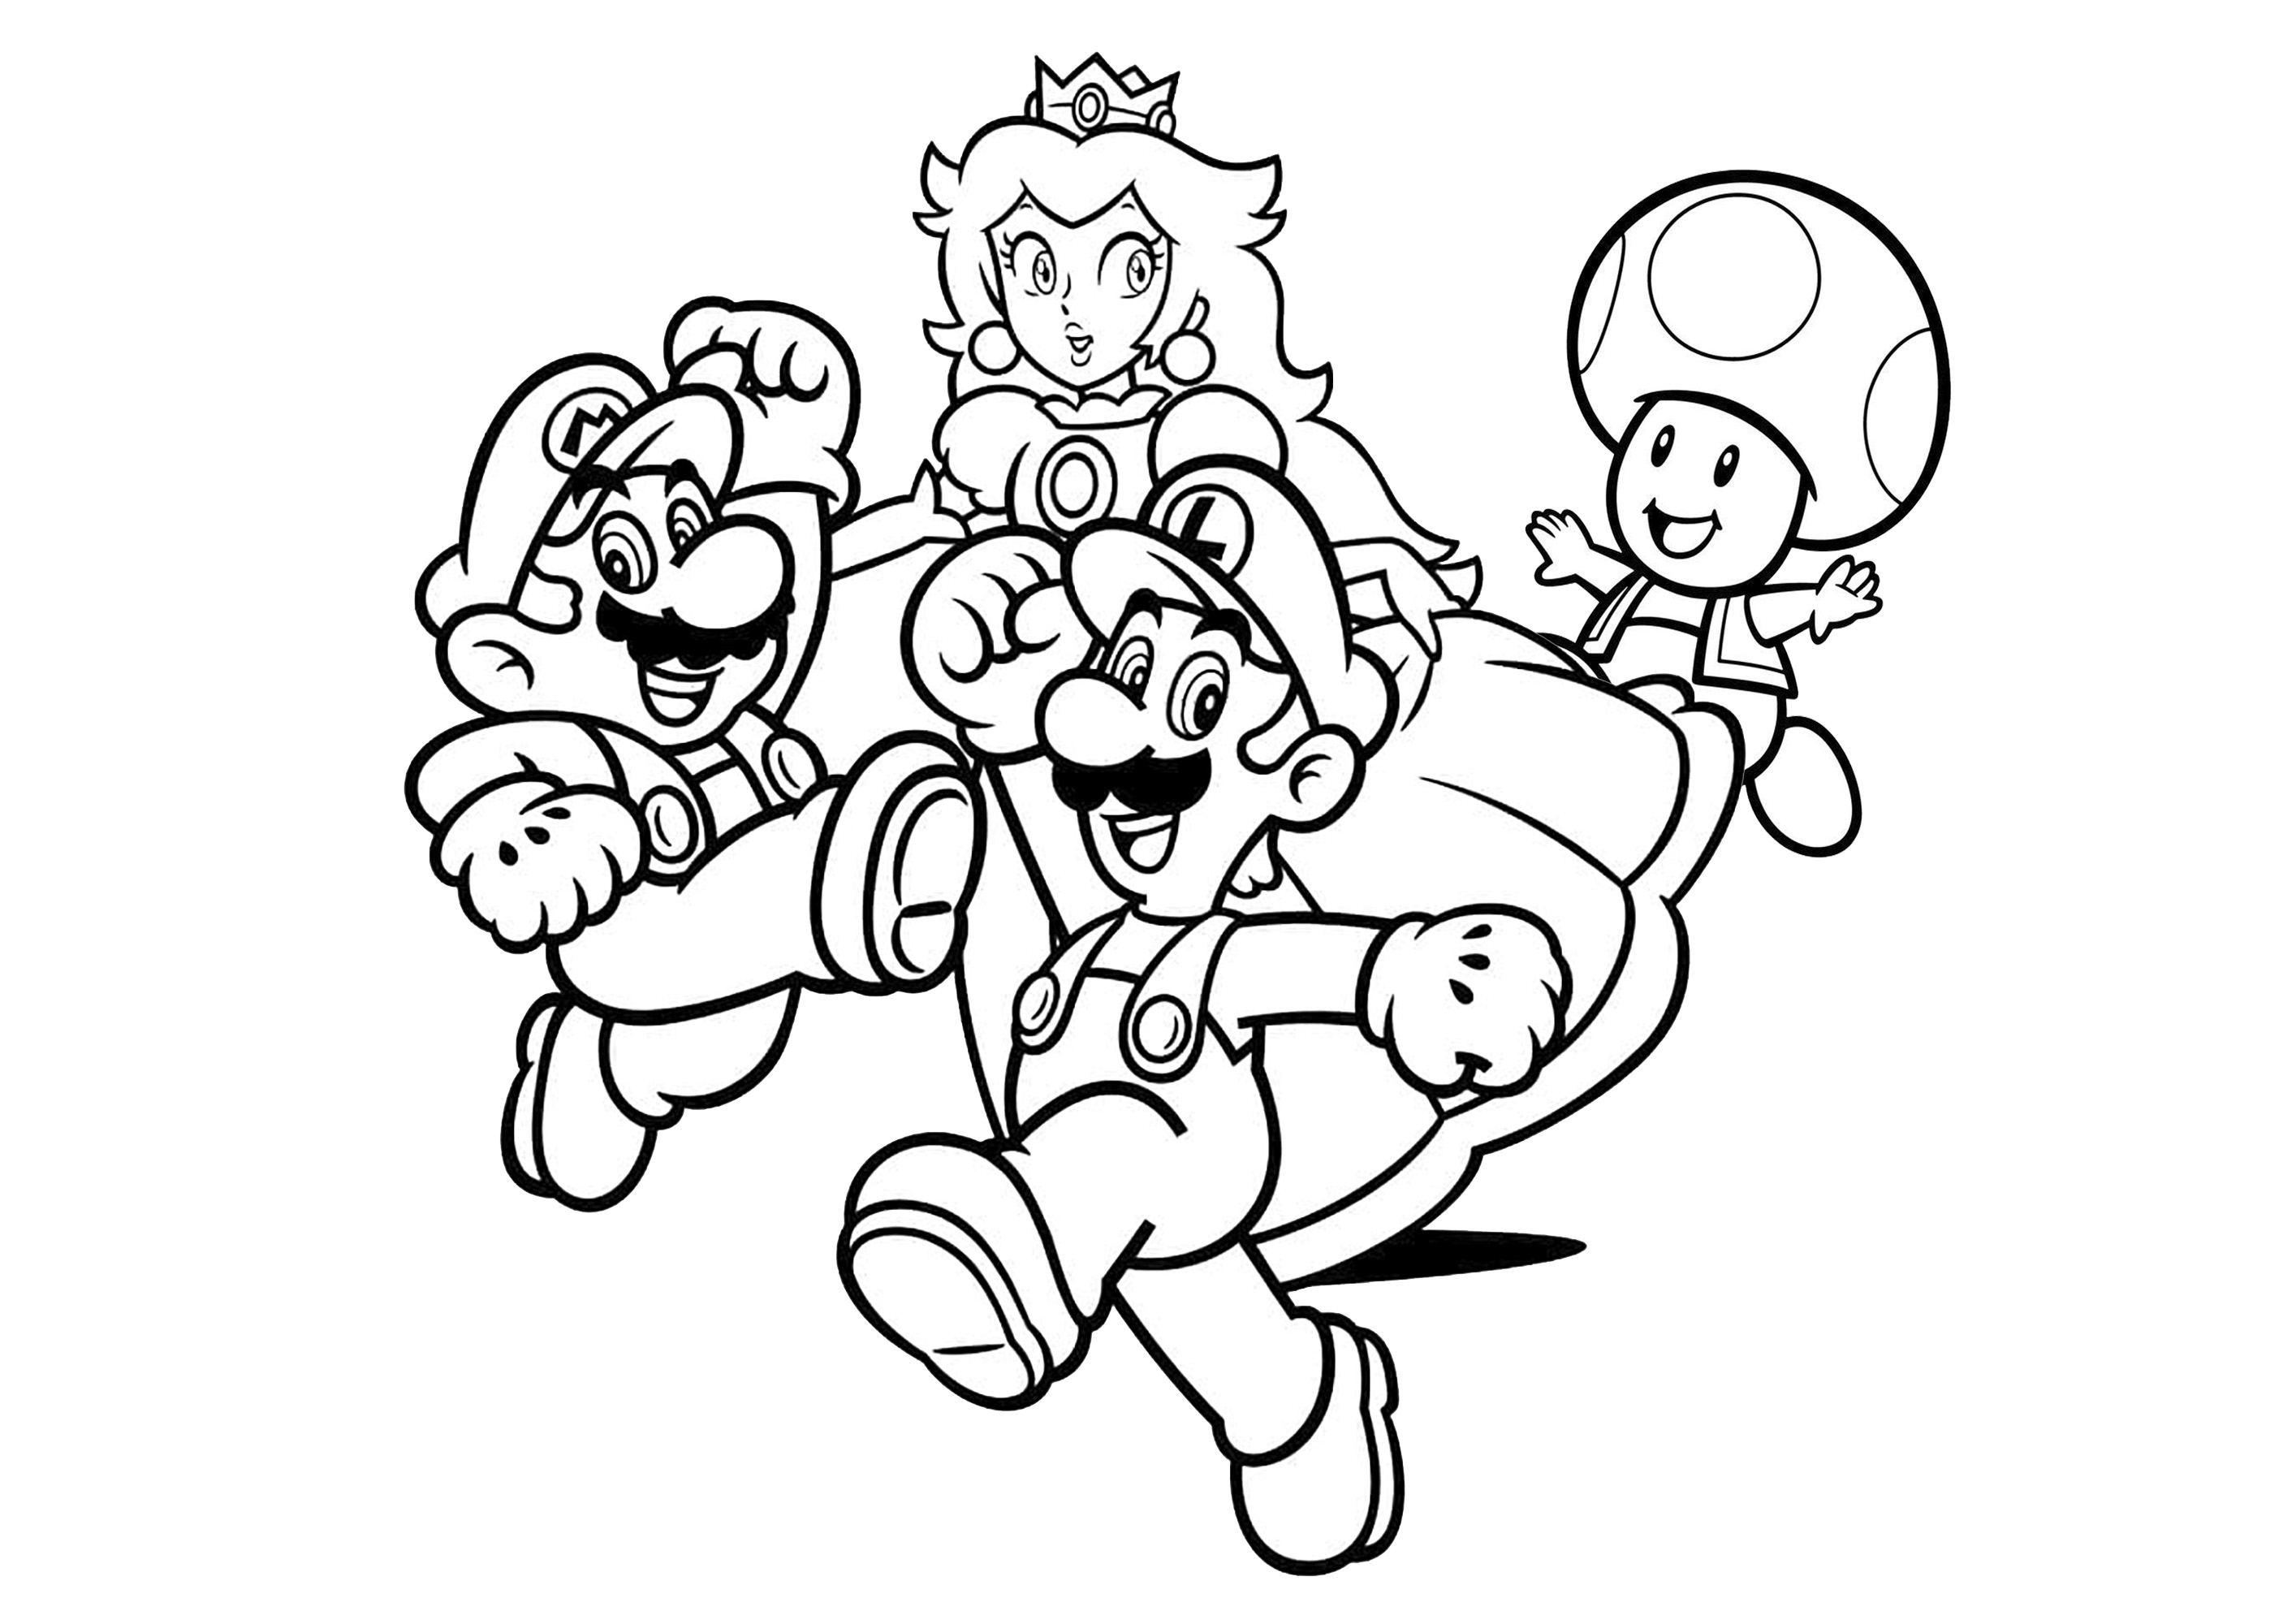 Mario con Luigi, la princesa Peach y su amigo Toad